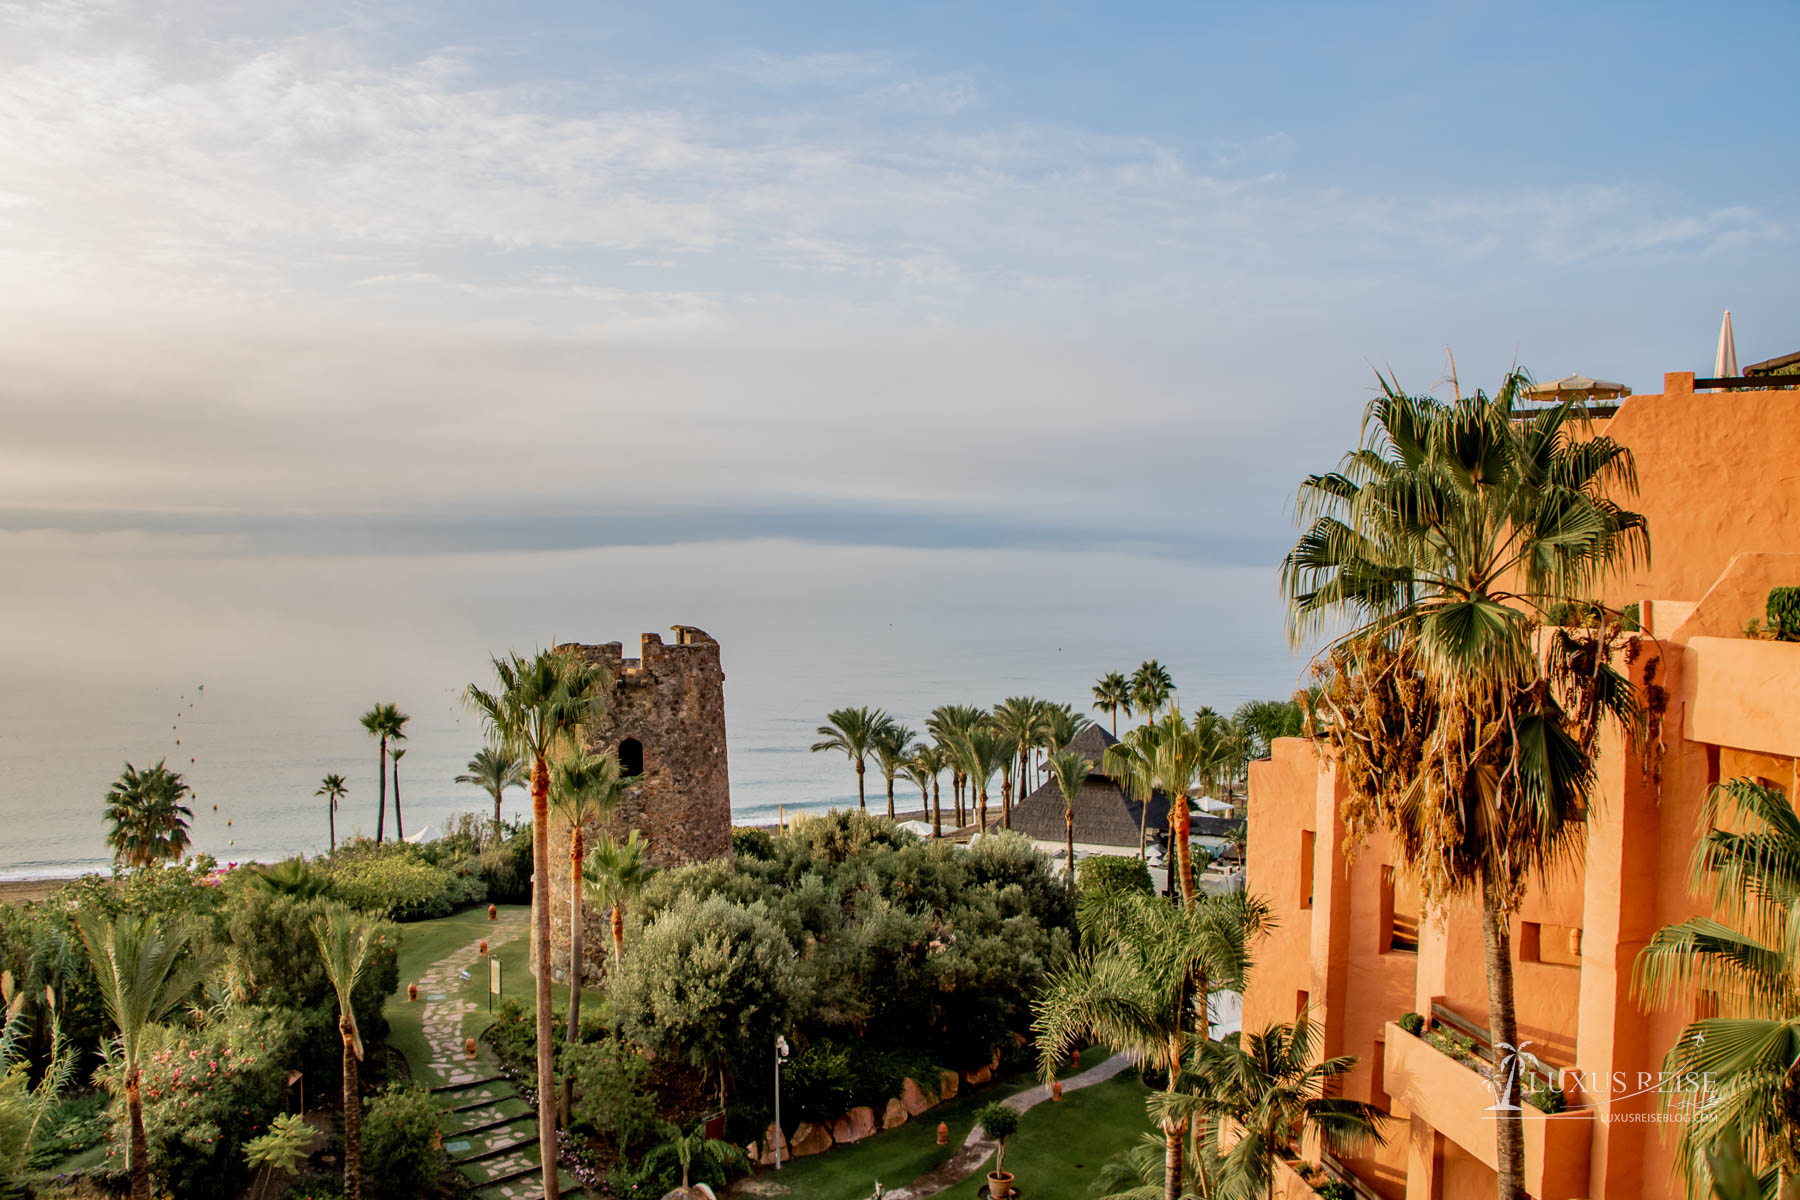 Kempinski Hotel Bahía Estepona Andalusien Spanien - Hoteltour und Hoteleindruck - Luxuriöses 5-Sterne Hotel am Mittelmeer - Aussicht auf das Mittelmeer